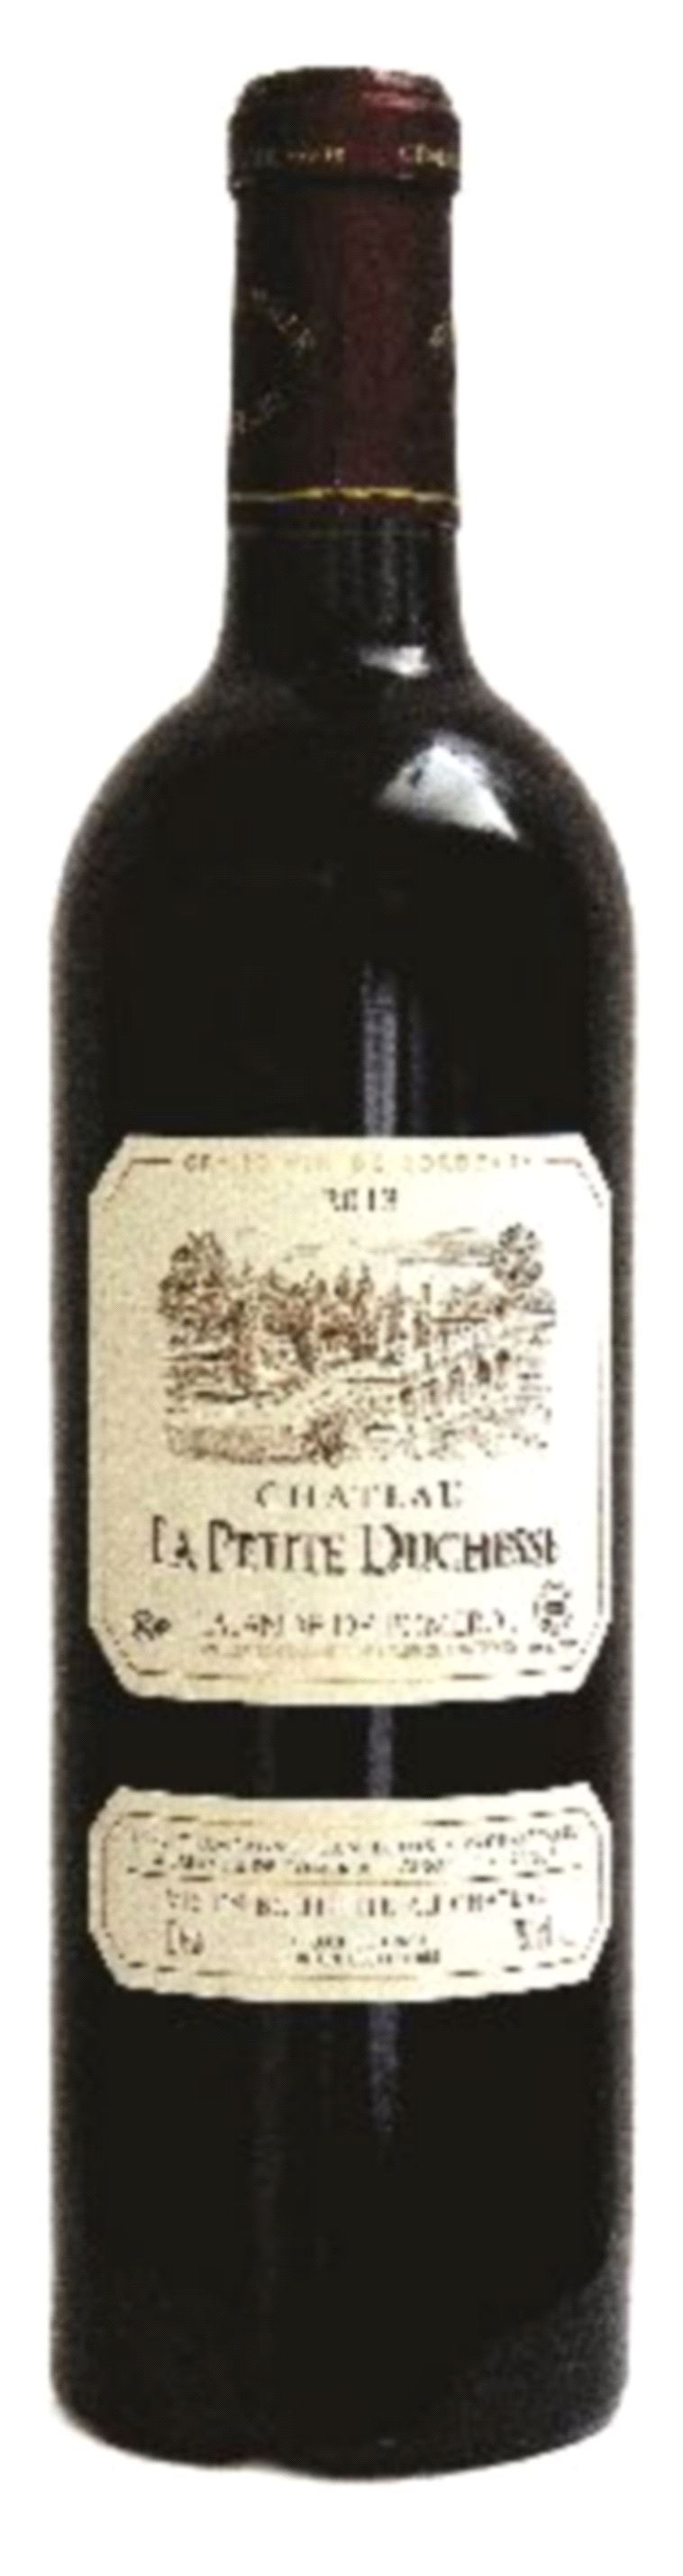 יין Chateau Petite Duchesse